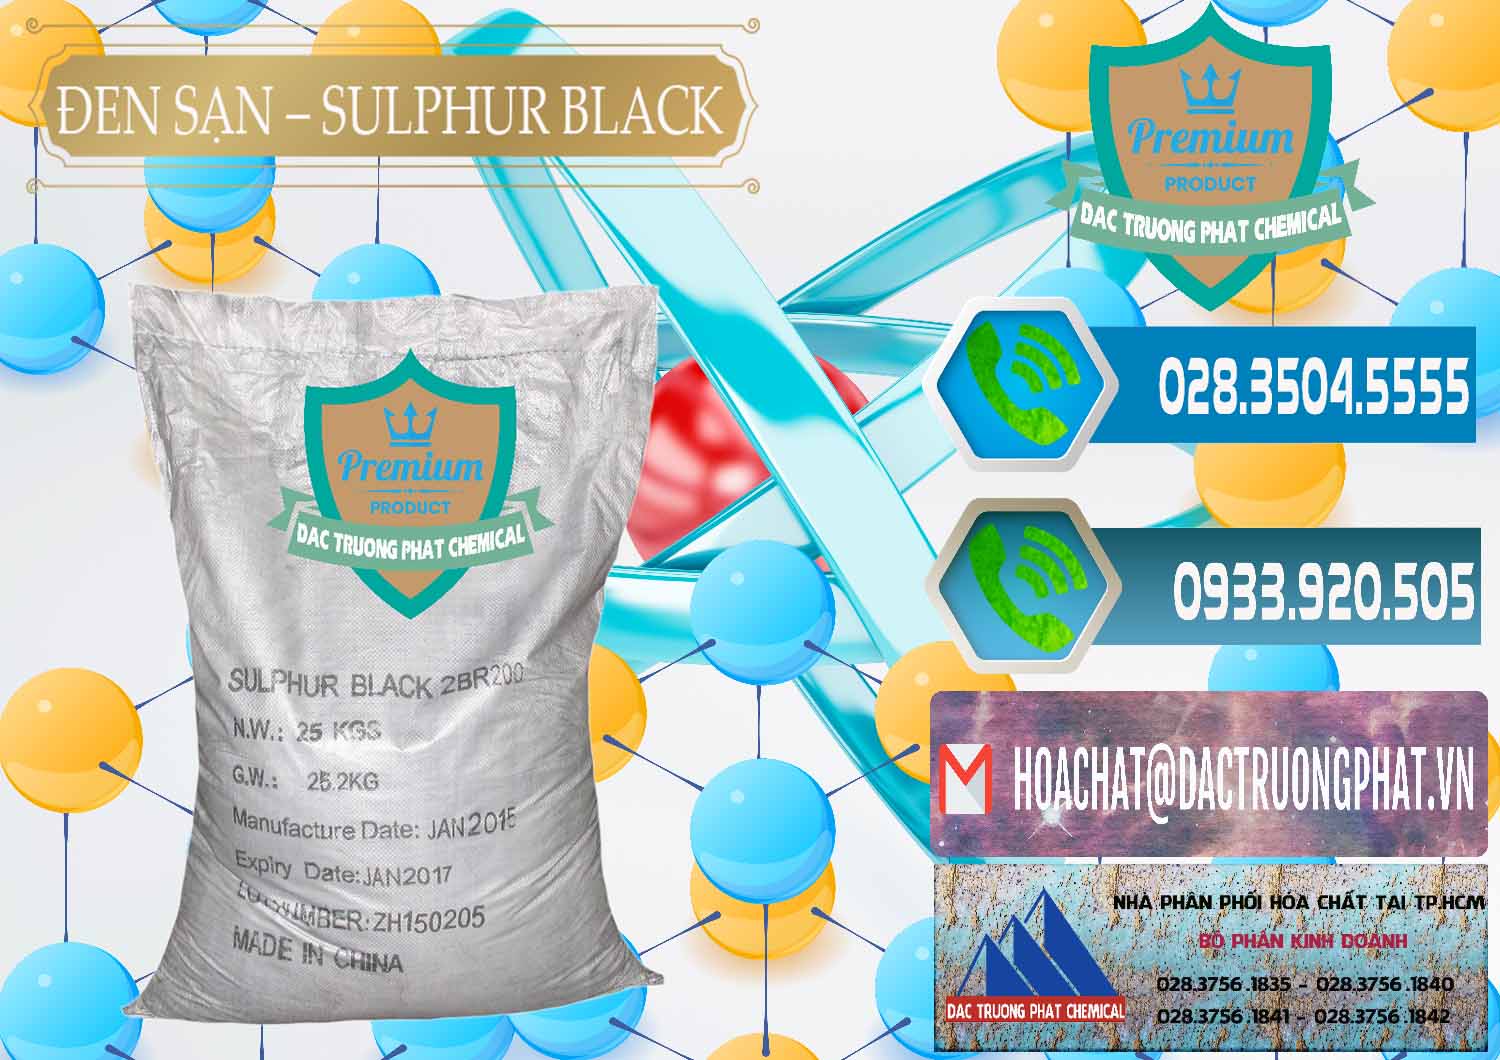 Cty chuyên kinh doanh - bán Đen Sạn – Sulphur Black Trung Quốc China - 0062 - Nơi chuyên kinh doanh ( cung cấp ) hóa chất tại TP.HCM - congtyhoachat.net